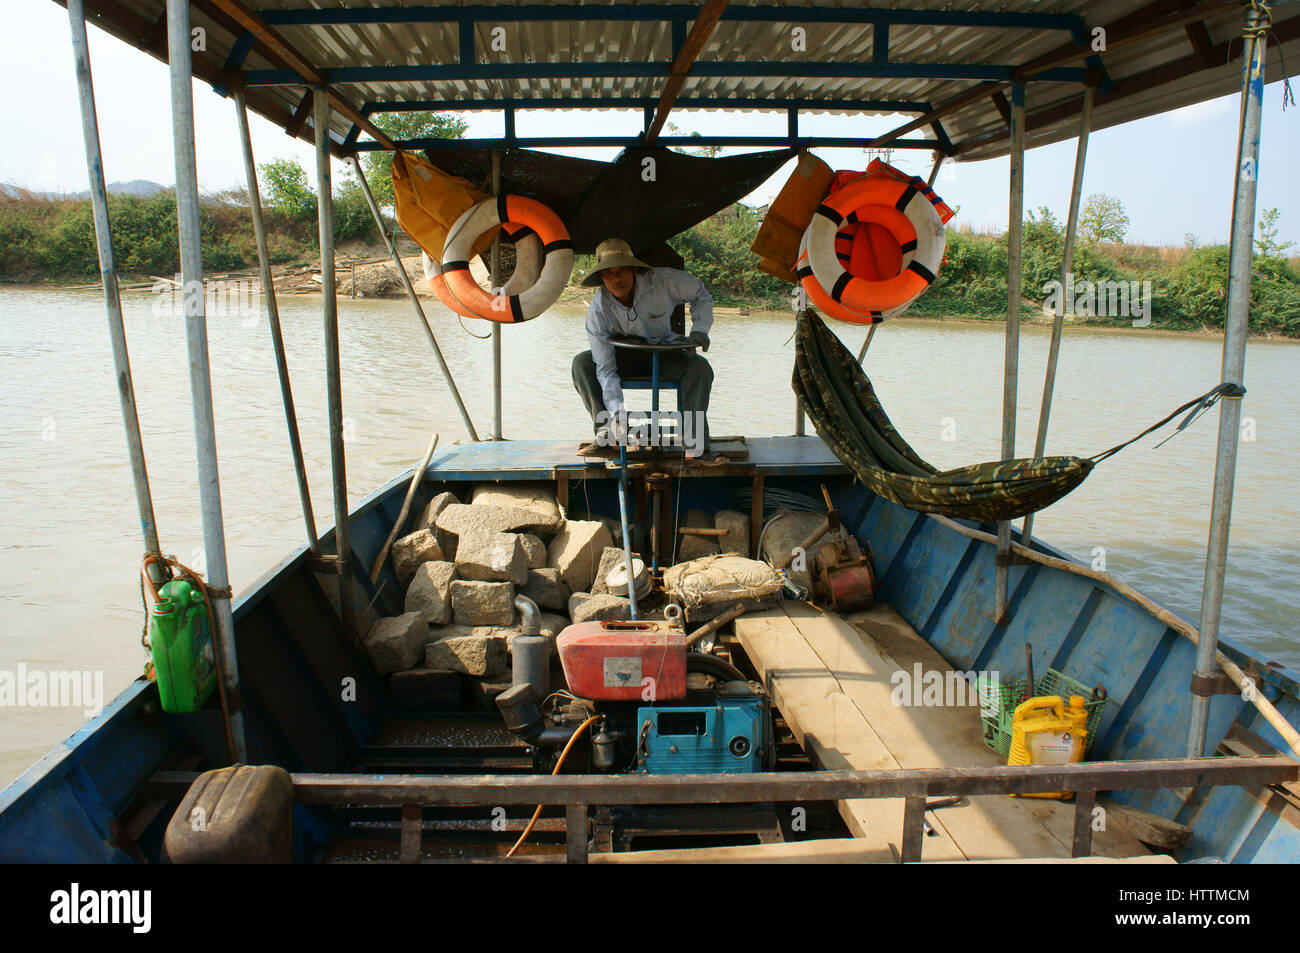 Transport für Menschen überqueren den Fluss auf Armen vietnamesischen Lande, Fährmann Arbeit am Tag Steuern Fähre Boot, primitive, unsicheren Fahrzeug, Vietnam Stockfoto